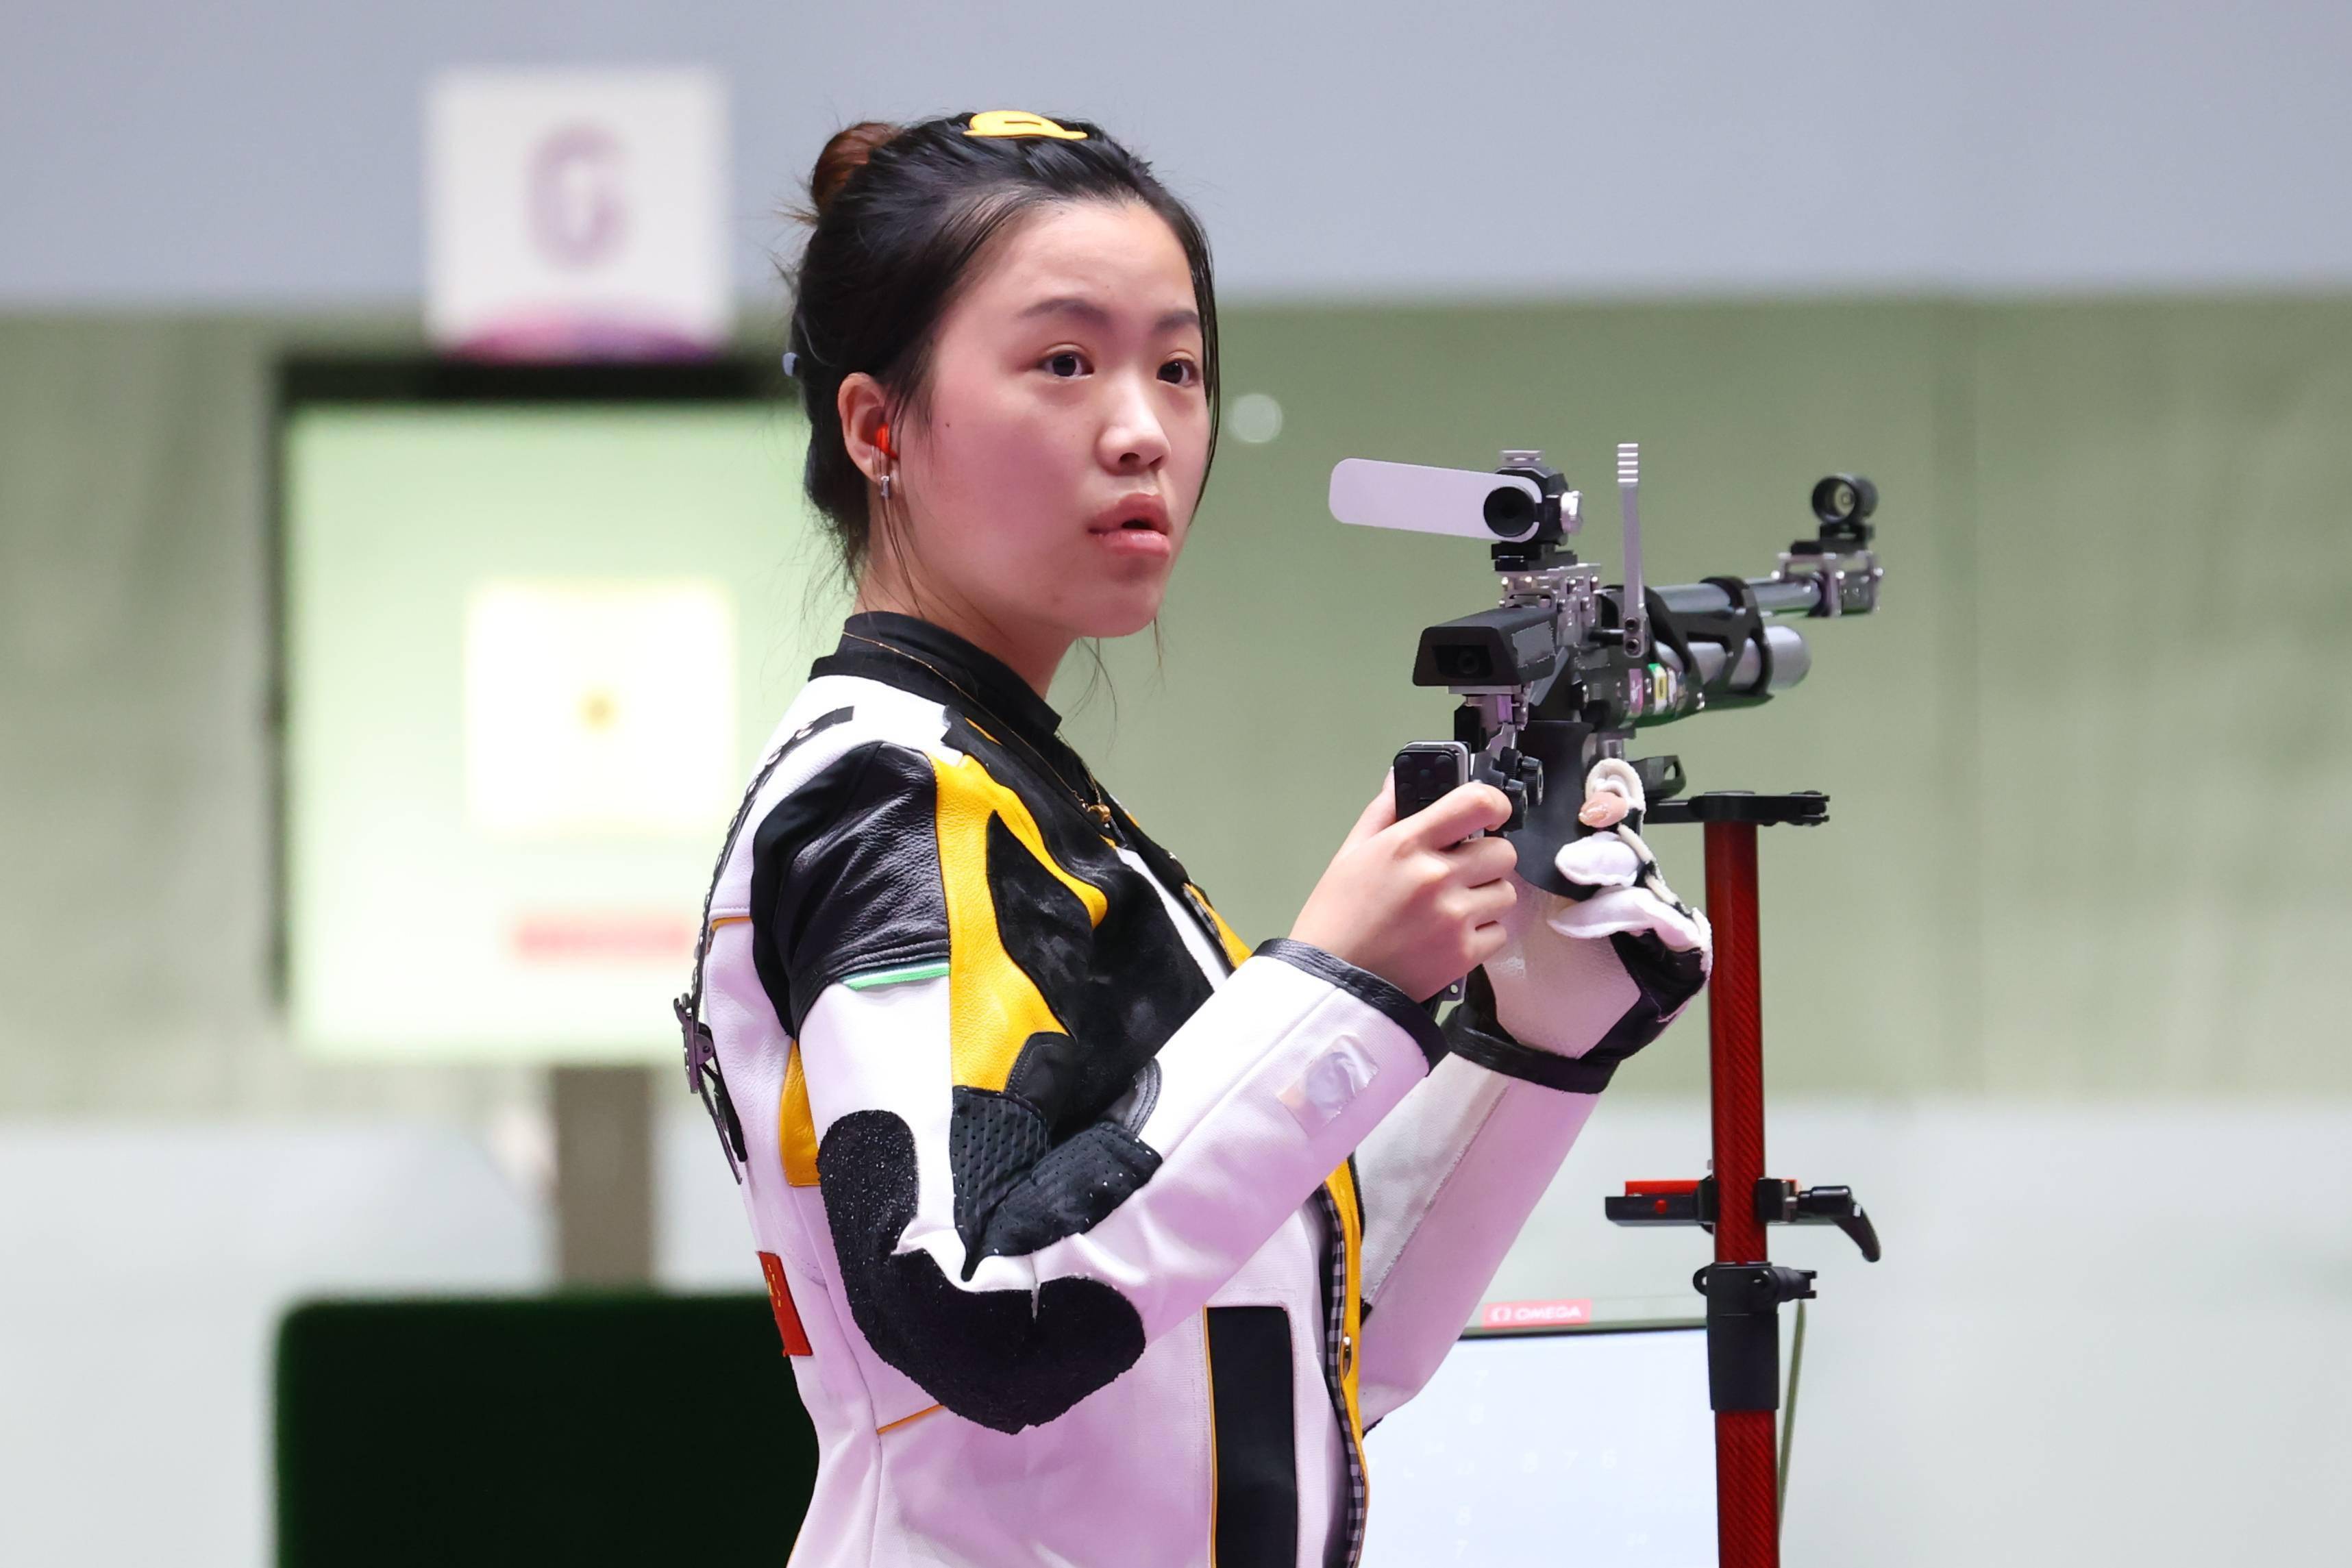 中国女乒3比0日本卫冕女团冠军 夺得第34金-中国网